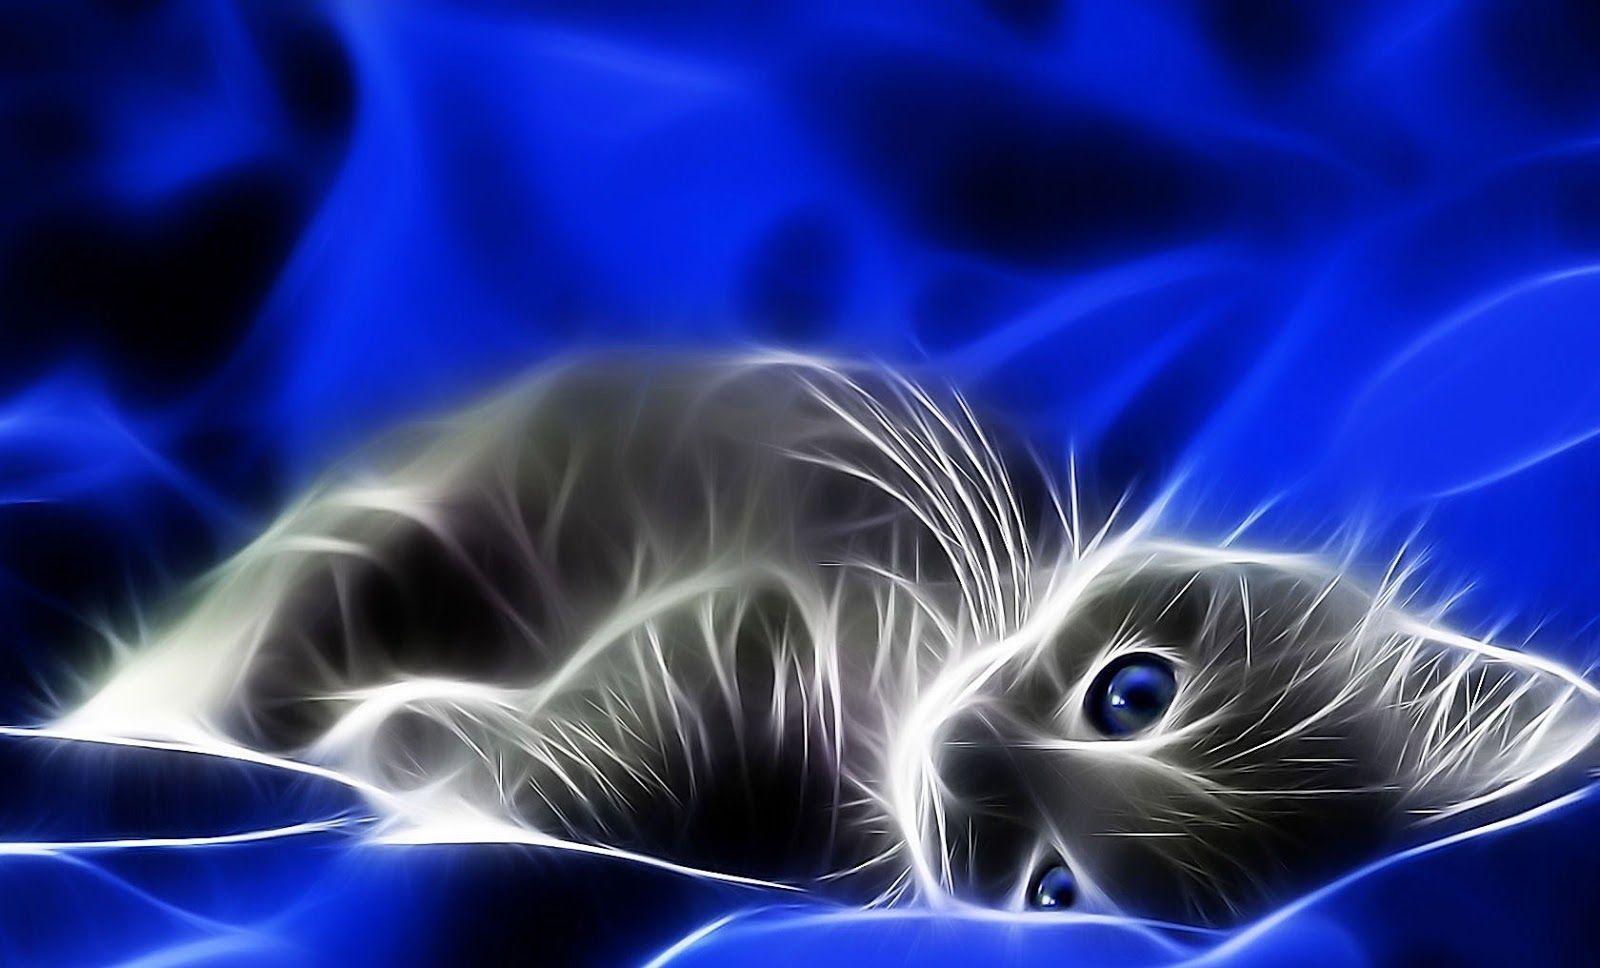 FANTASY KITTENS. related posts cats wallpaper fantasy fantasy